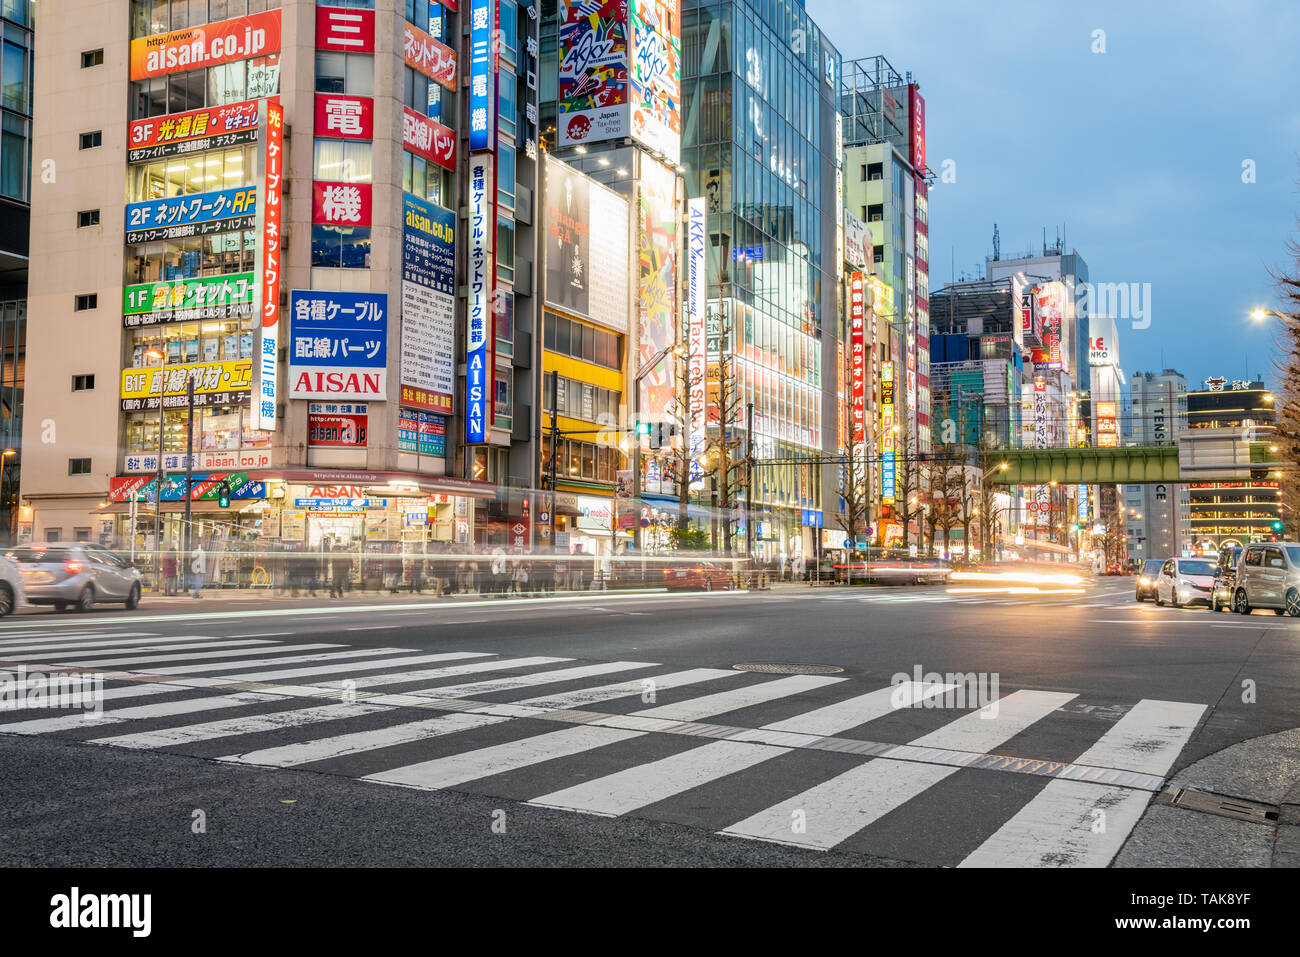 Tokyo, Giappone - 23 Marzo 2019: crocevia di Akihabara al crepuscolo. Akihabara è un quartiere dello shopping nel centro di Tokyo famosa per i suoi negozi di elettronica Foto Stock